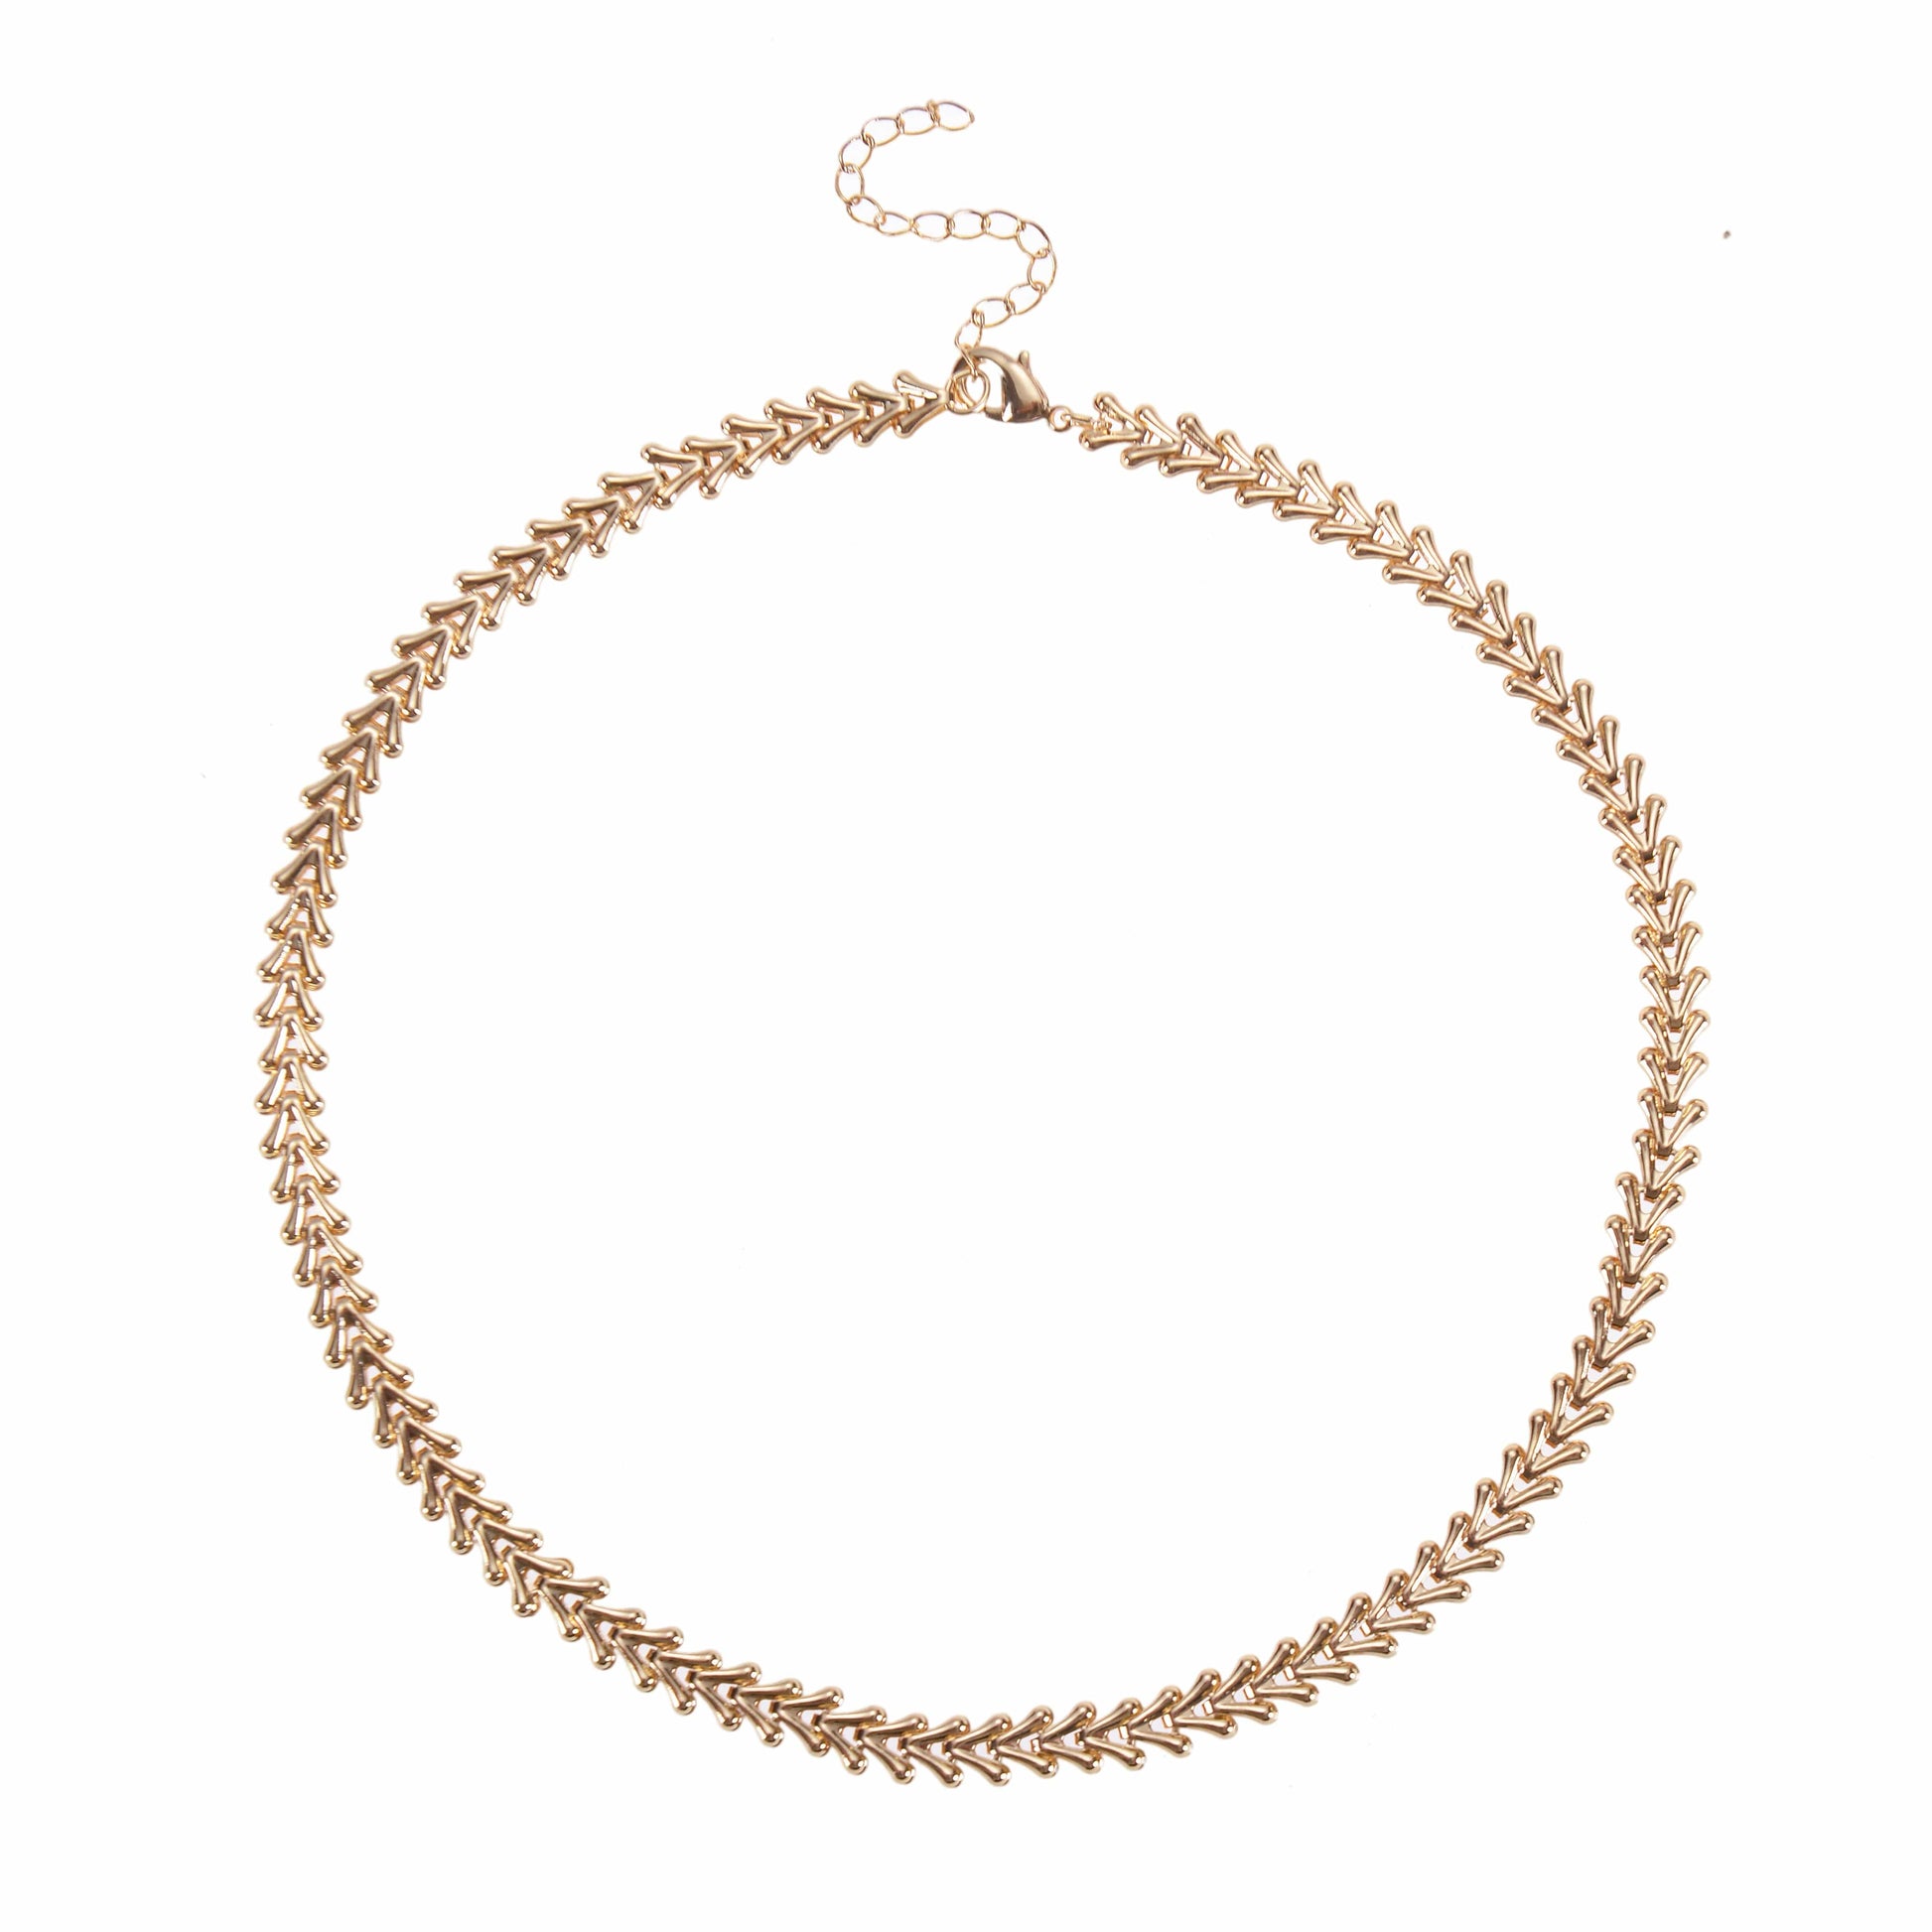 v-link gold necklace